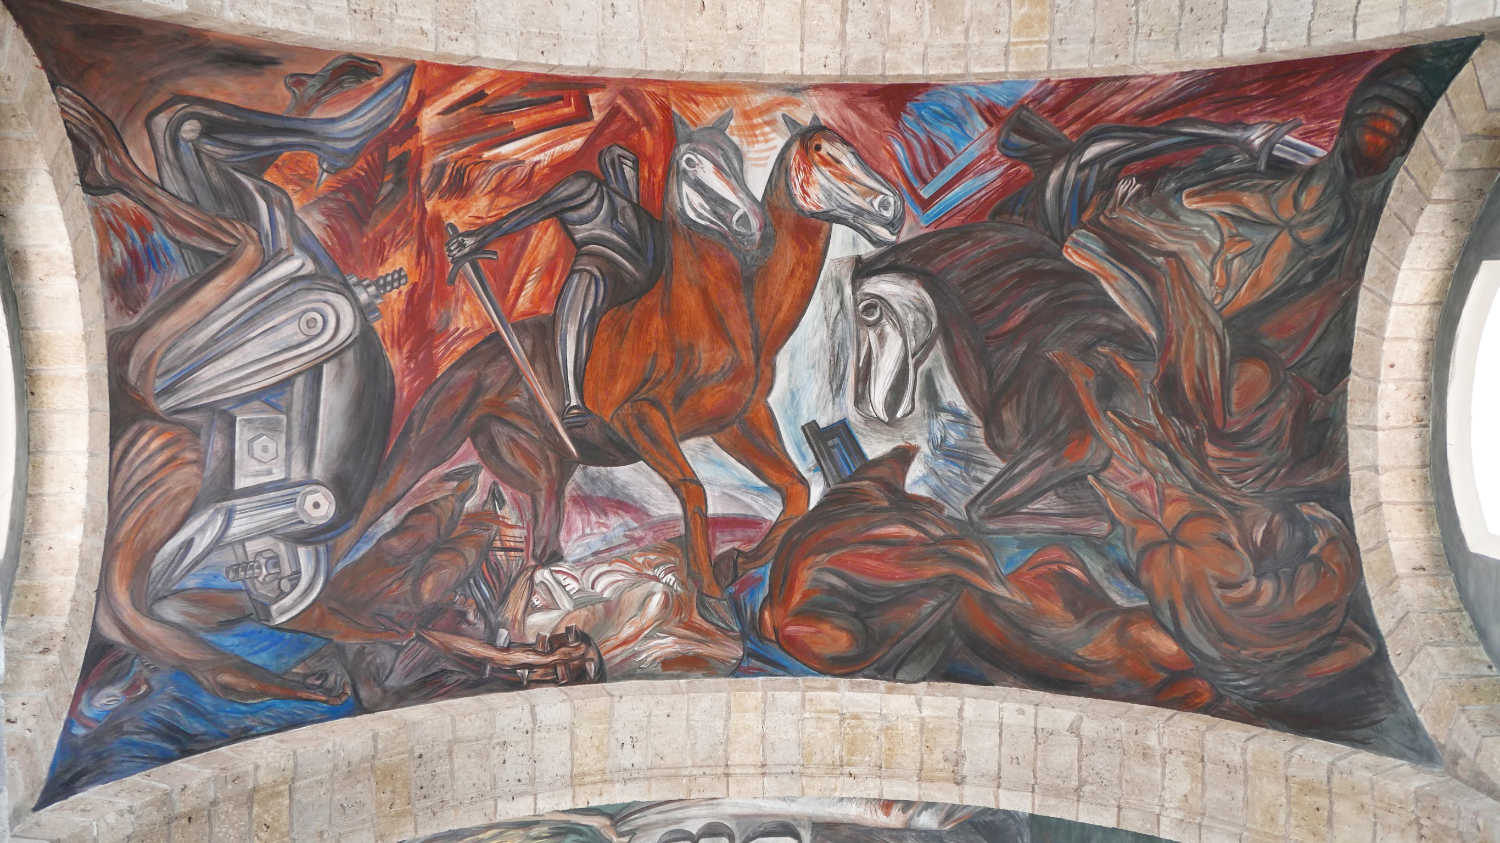 Orozco mural in central nave of Hospicio Cabanas in Guadalajara